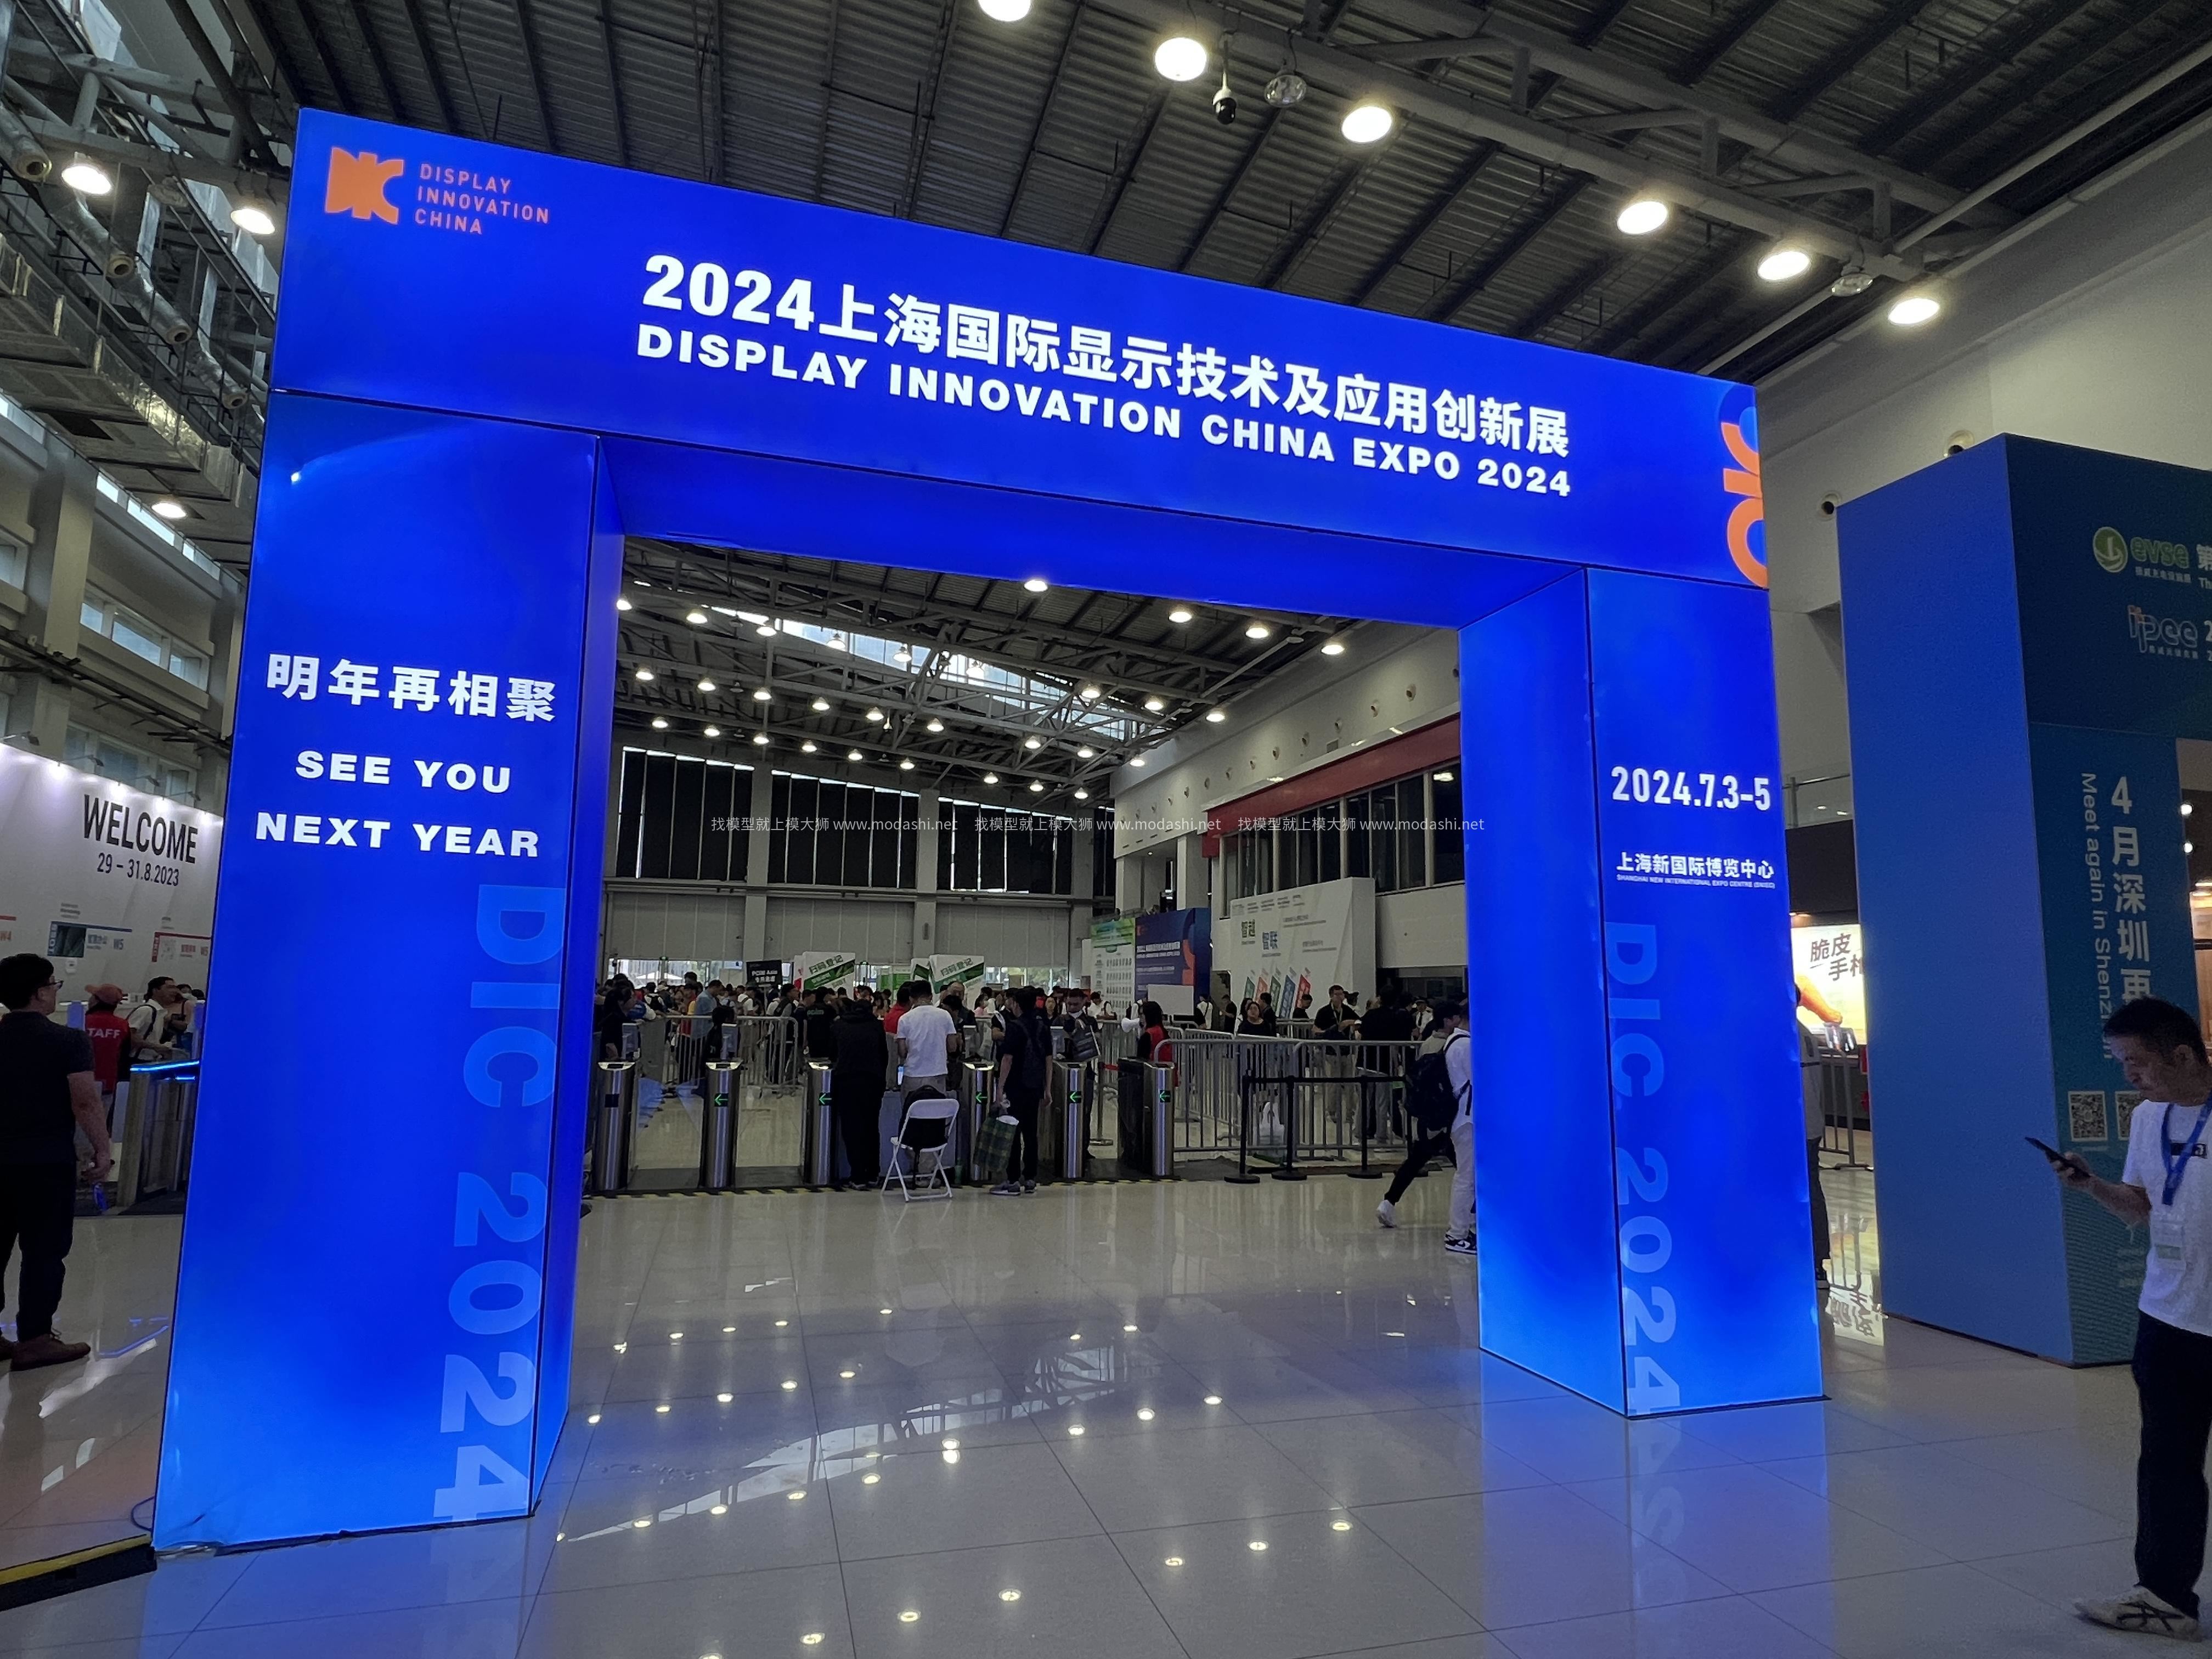 上海国际显示技术及应用创新展览会